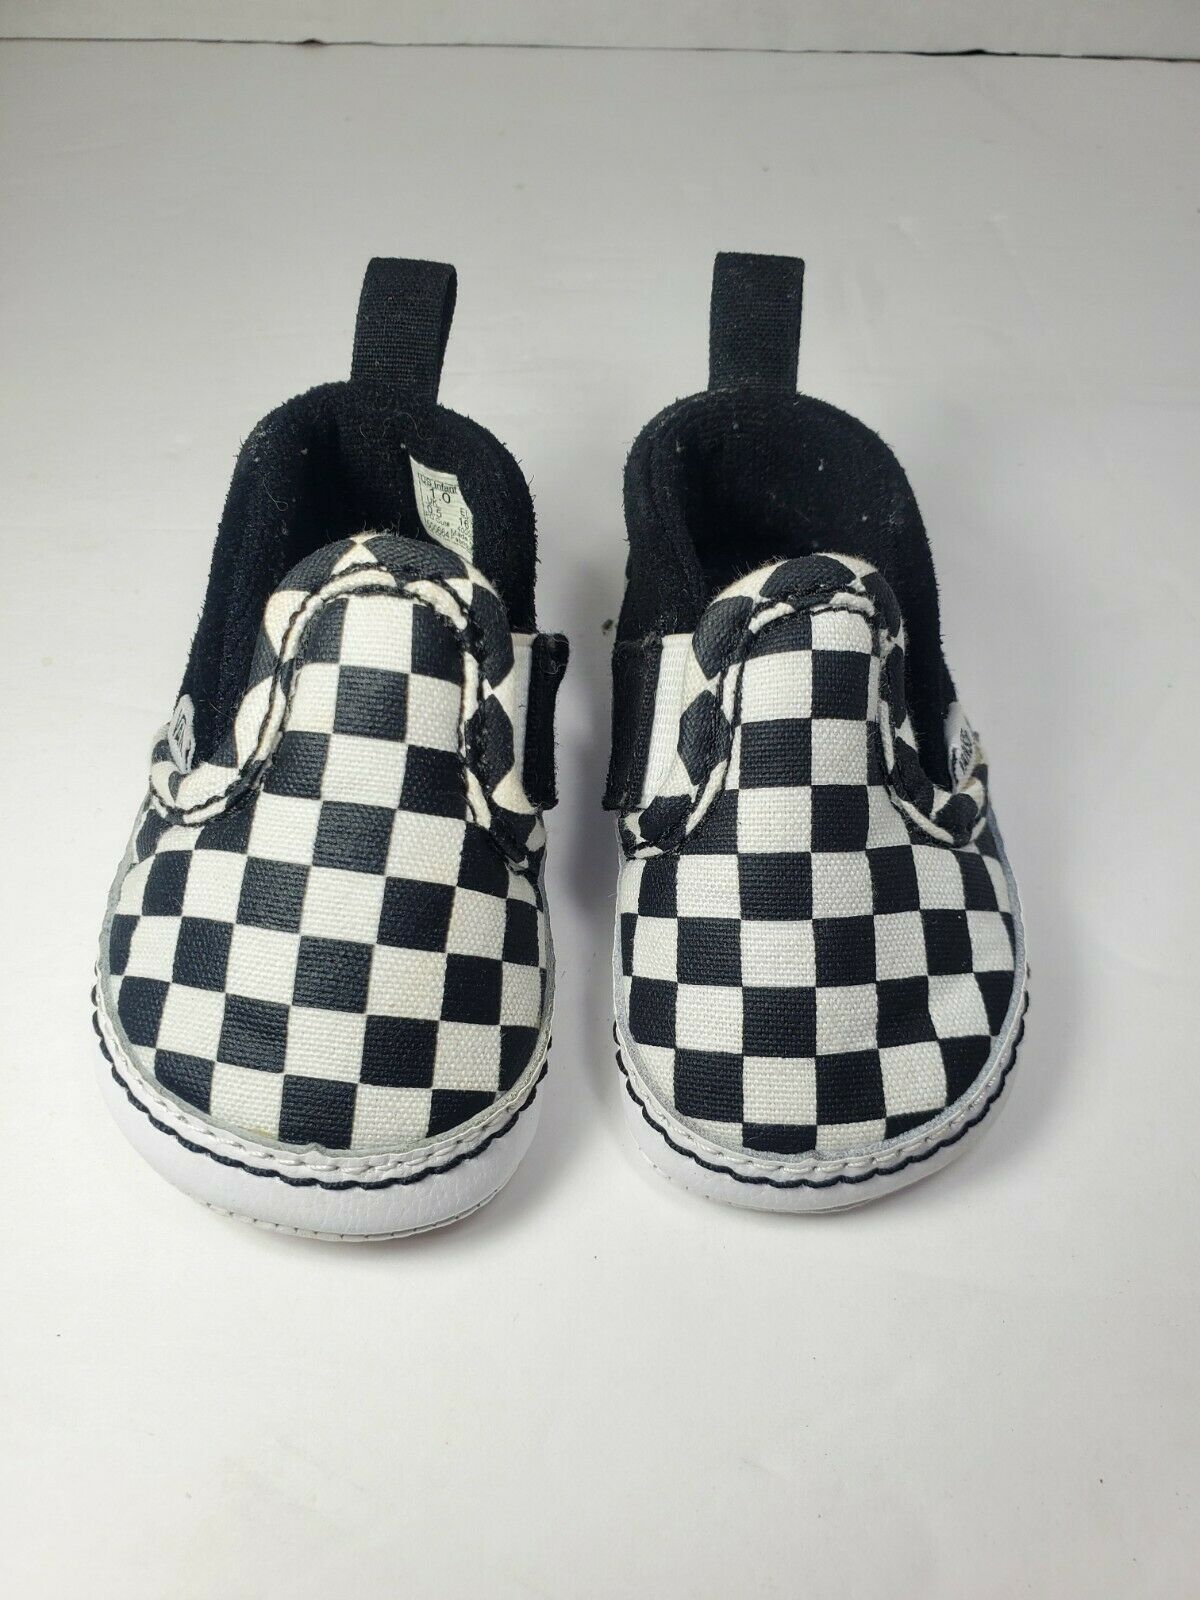 Vans Slip On V Crib Black True White Checkerboard Baby Shoes Size 1 Soft Bottom